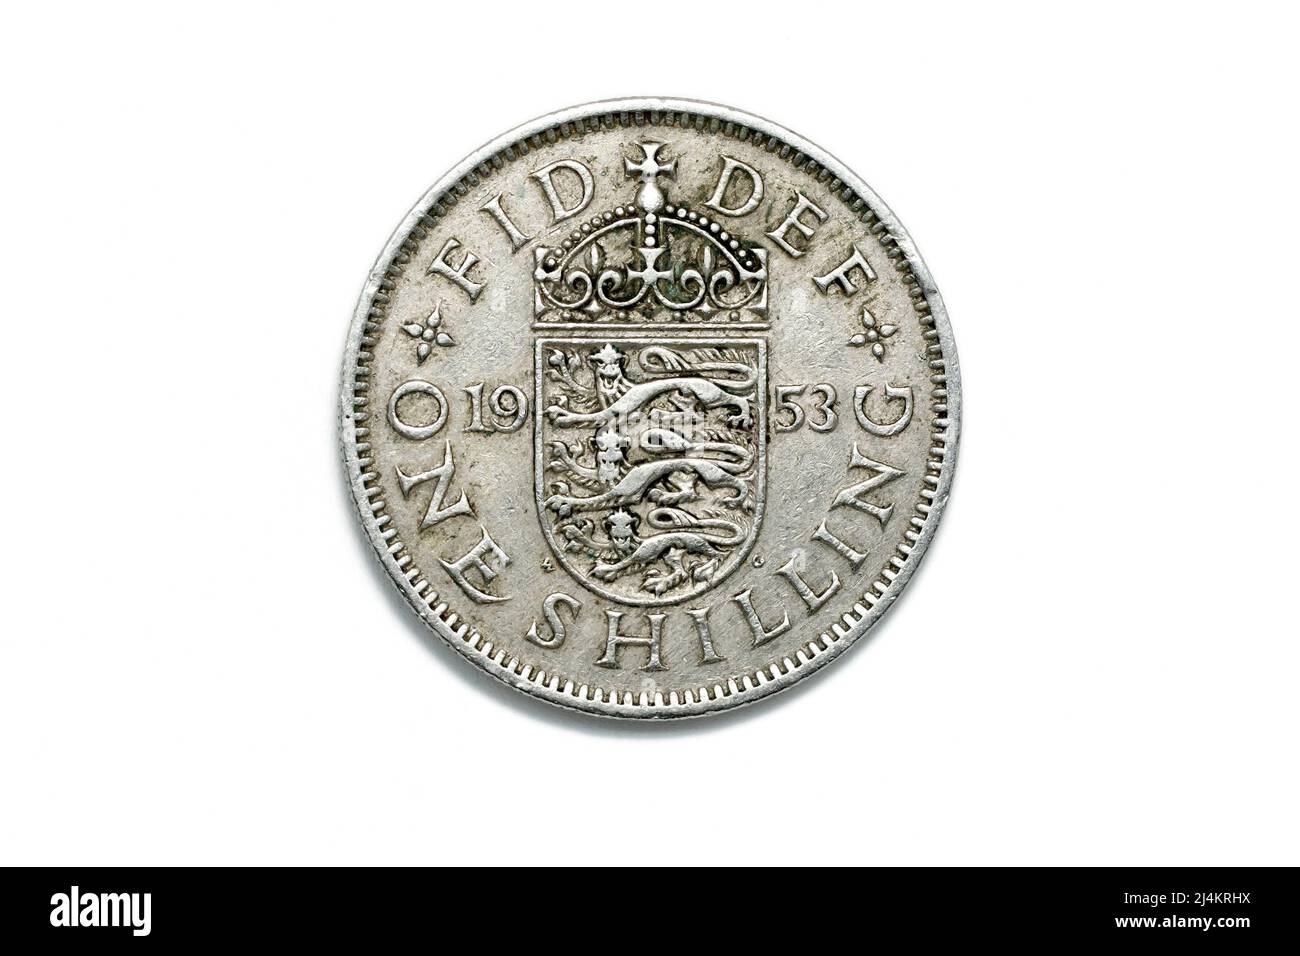 Gros plan sur le côté queues d'une pièce de shilling pré-décimale, également connue sous le nom de bob, daté de 1953, isolée sur fond blanc. Banque D'Images